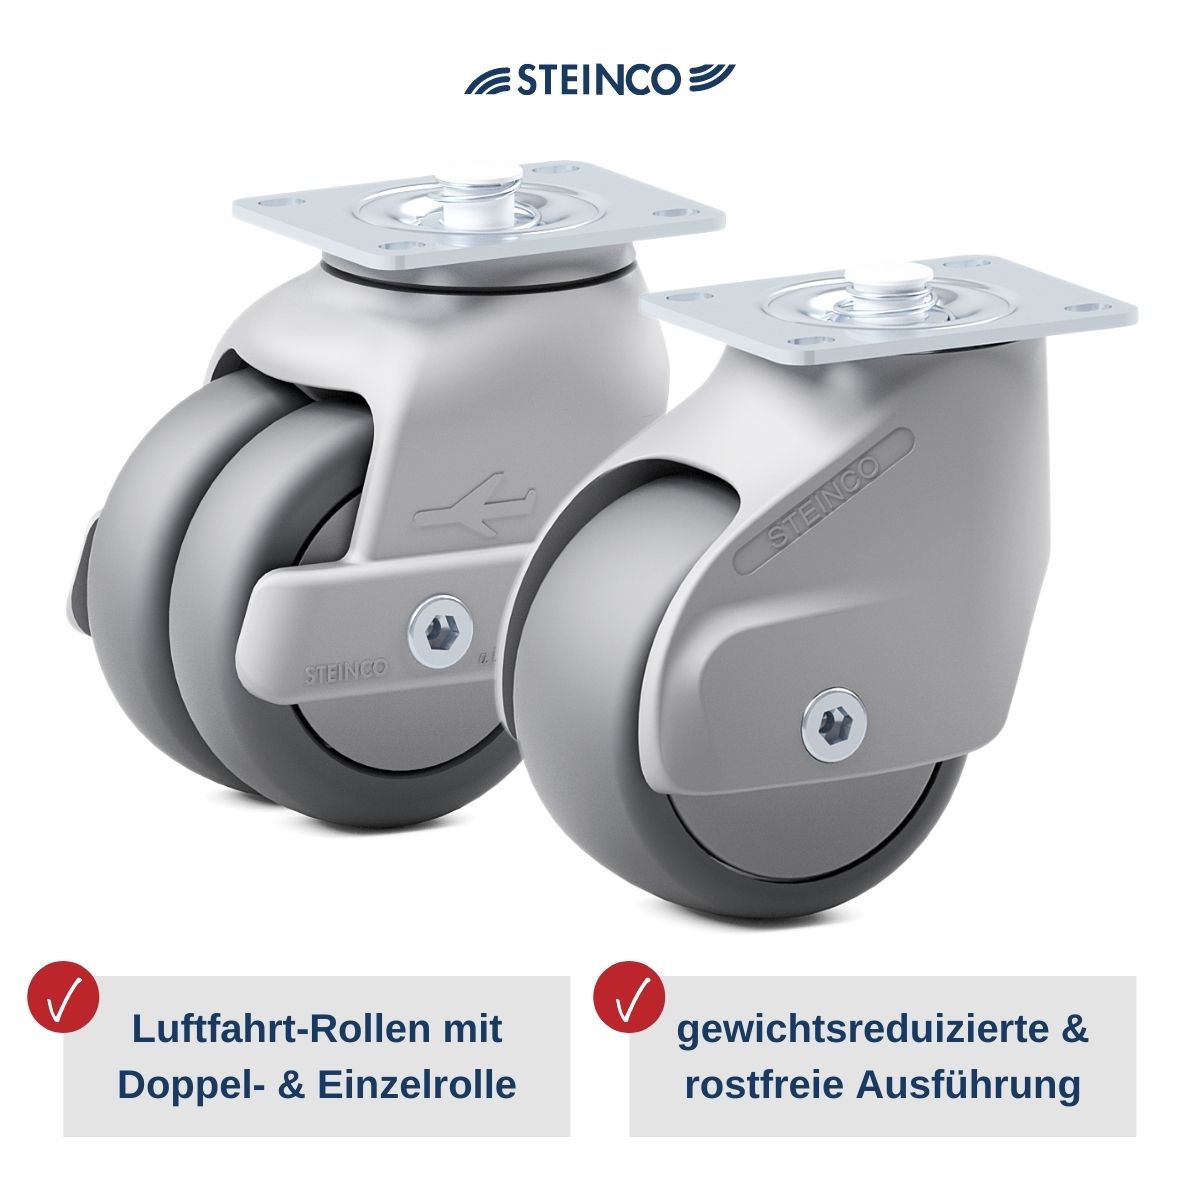 Steinco Flugzeug Rollen & Räder für Flugzeug-Servierwagen & -Trolleys, auf engstem Raum manövrierbar, leicht, sicher & speziell für die Luftfahrt entwickelt